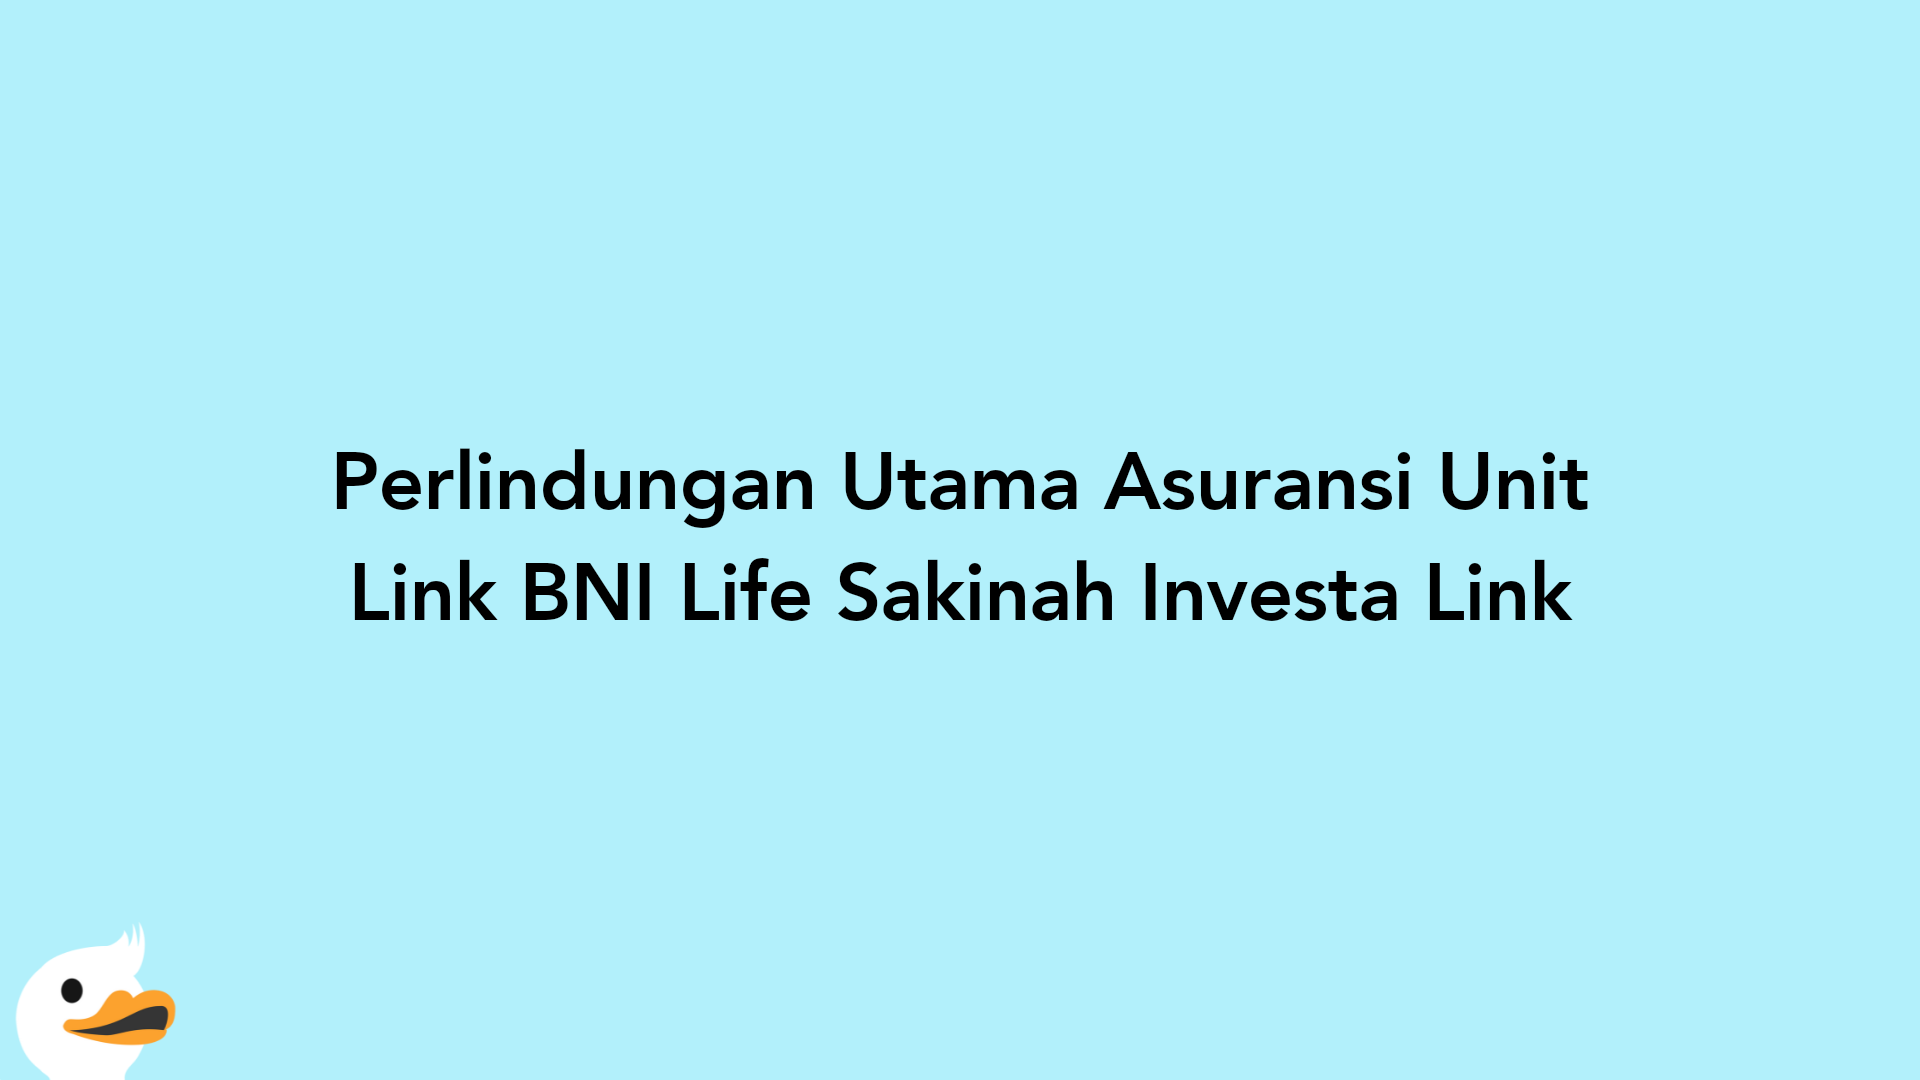 Perlindungan Utama Asuransi Unit Link BNI Life Sakinah Investa Link